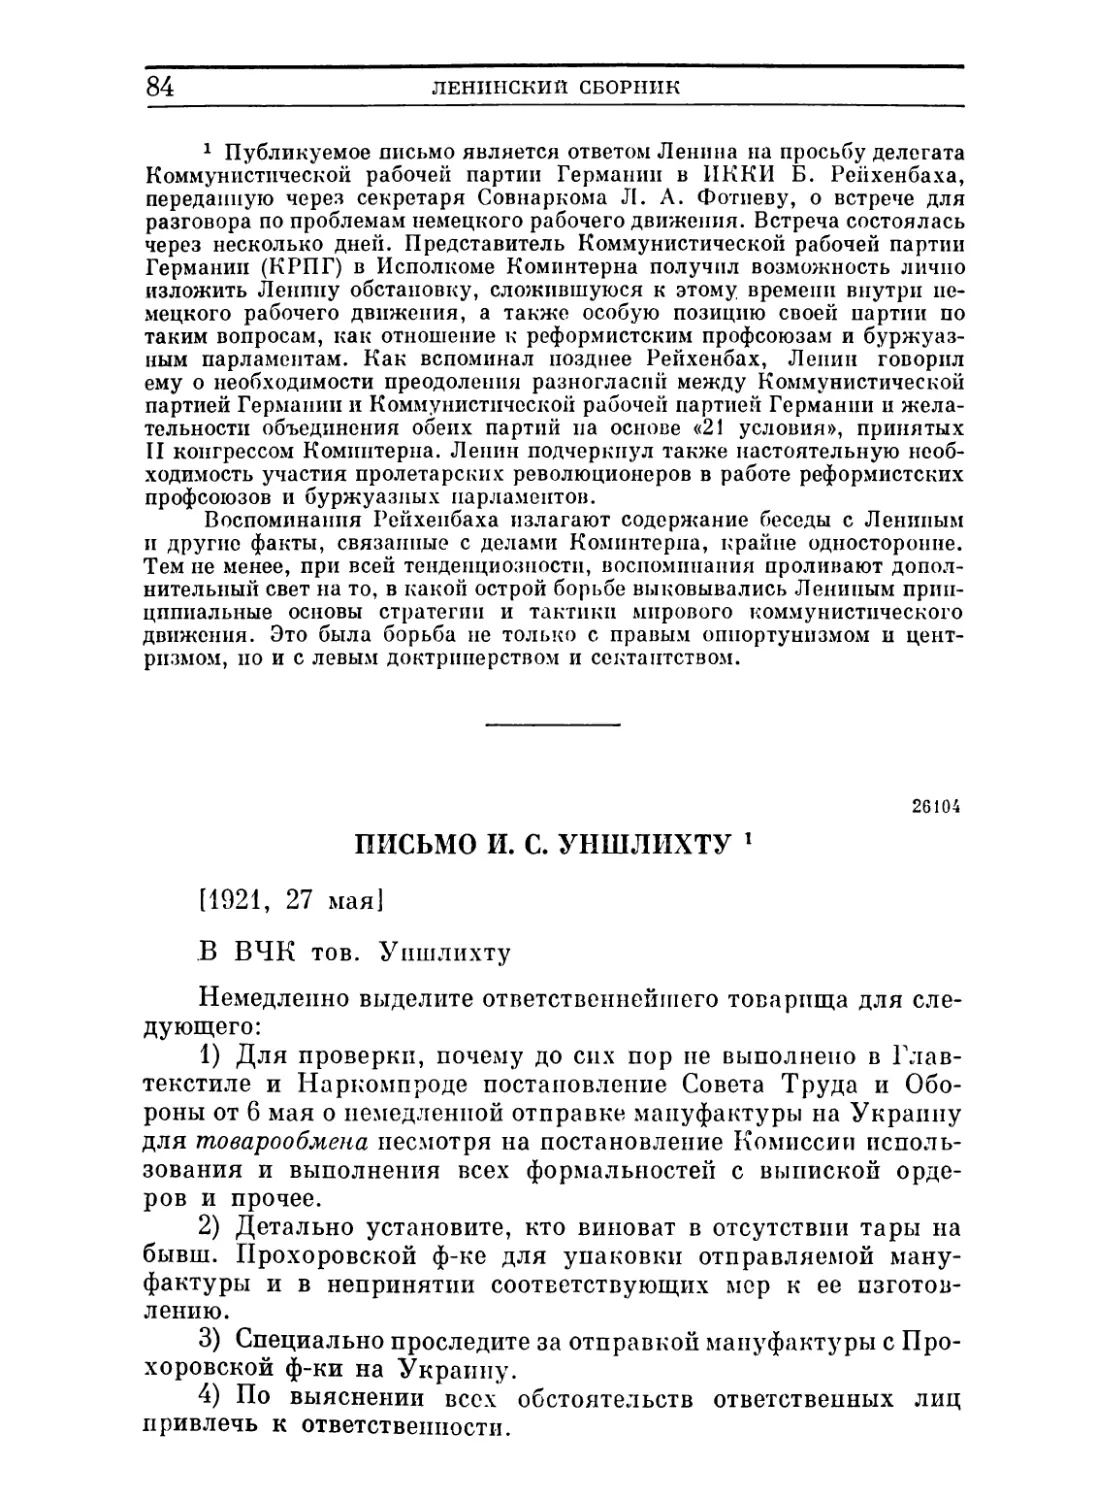 Письмо И. С. Уншлихту. 27 мая 1921